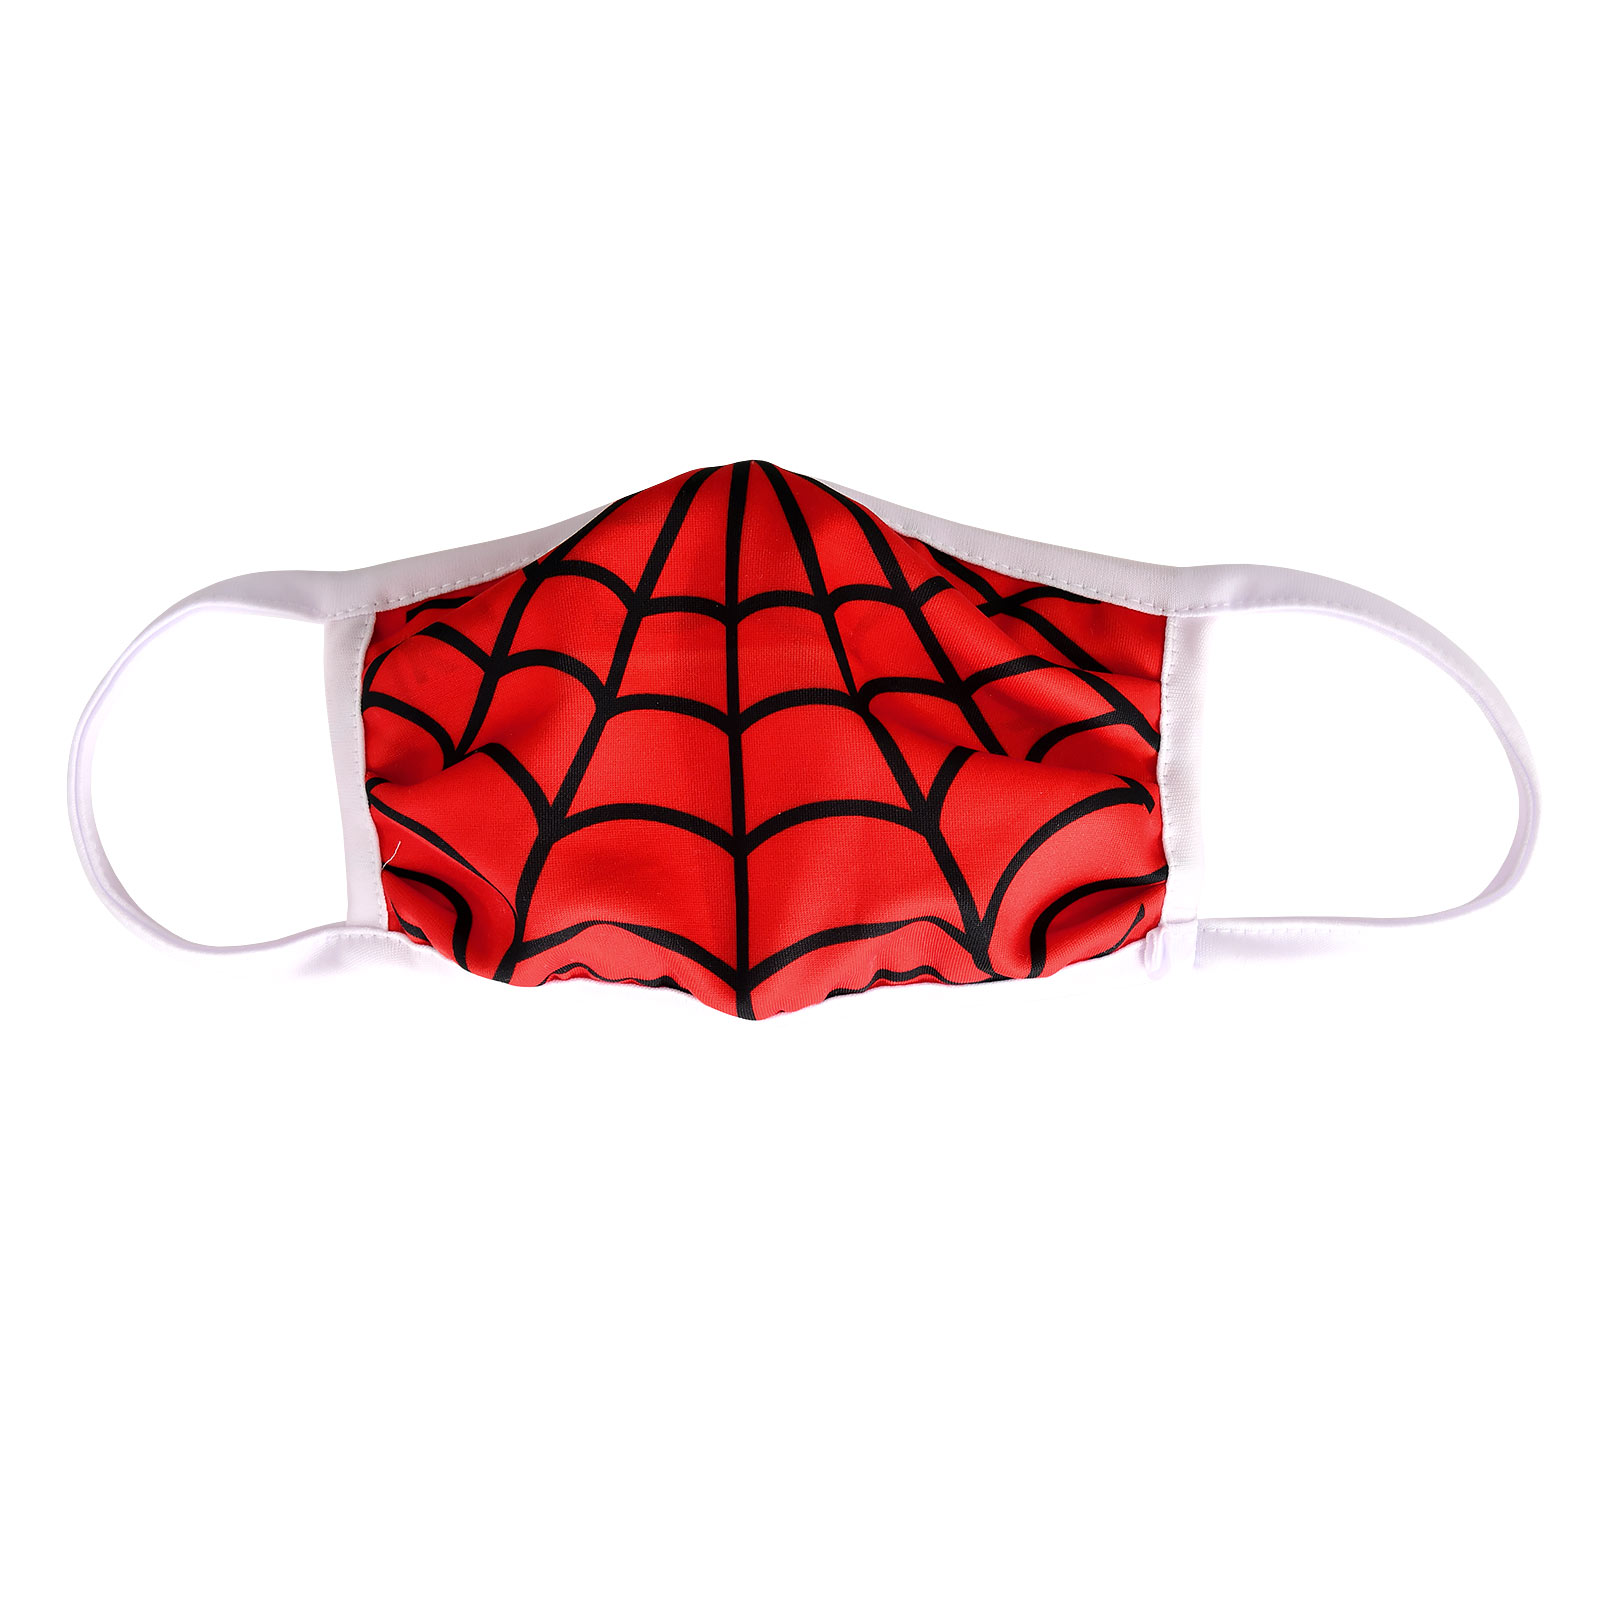 Masque facial toile d'araignée pour les fans de Spider-Man